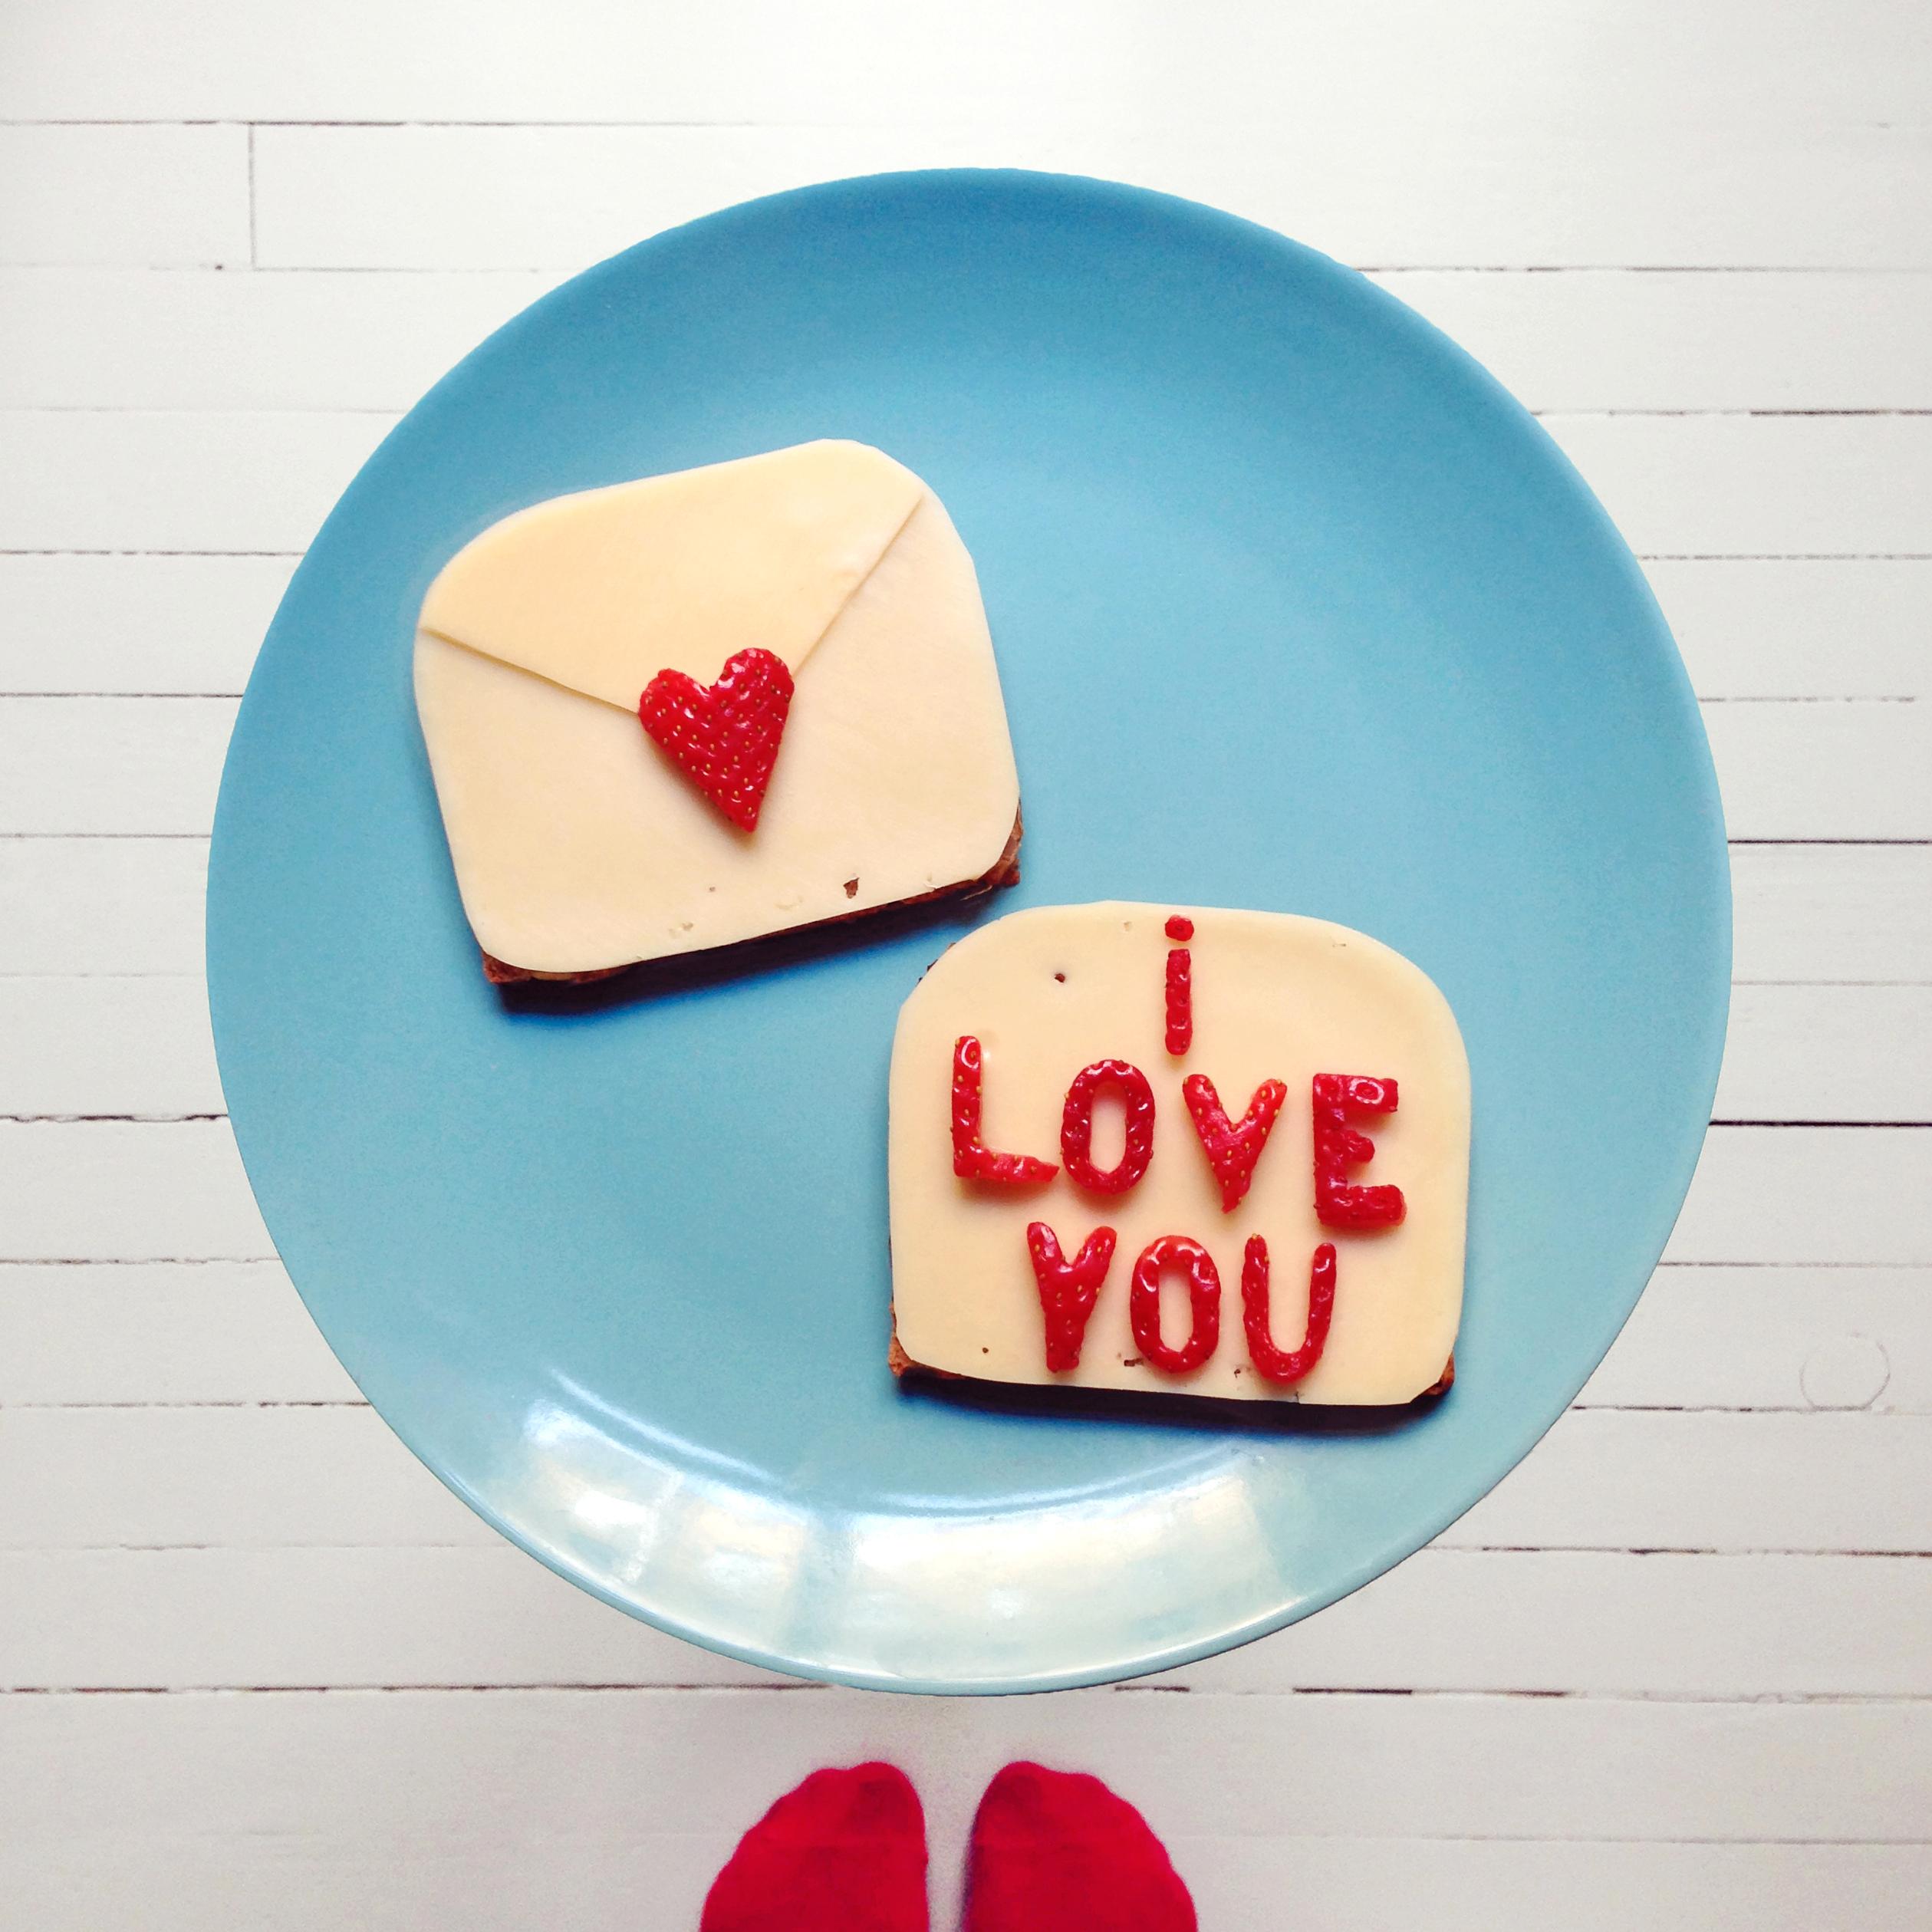 Fest på hjertet på konvolutten og legg den ønskede kjærlighetsbeskjeden på «brevarket». Pynt gjerne med rester av ost og jordbær ellers på tallerkenen. Server frokosten i sengen og håp på fordelaktig svar.